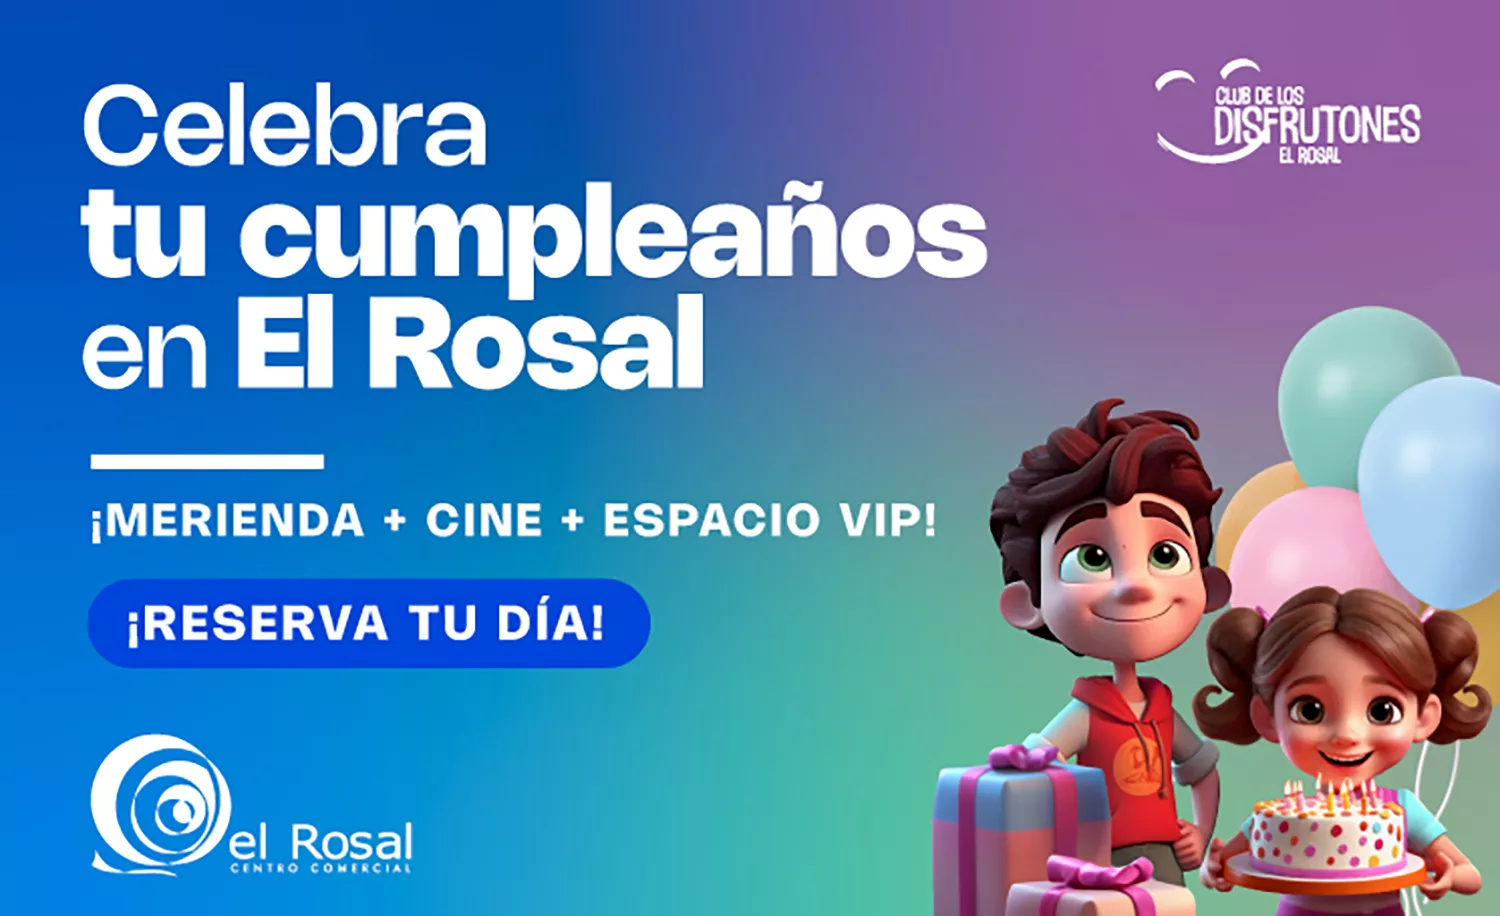 El Rosal de Ponferrada estrena un servicio de celebración de cumpleaños con merienda, cine y espacio exclusivo